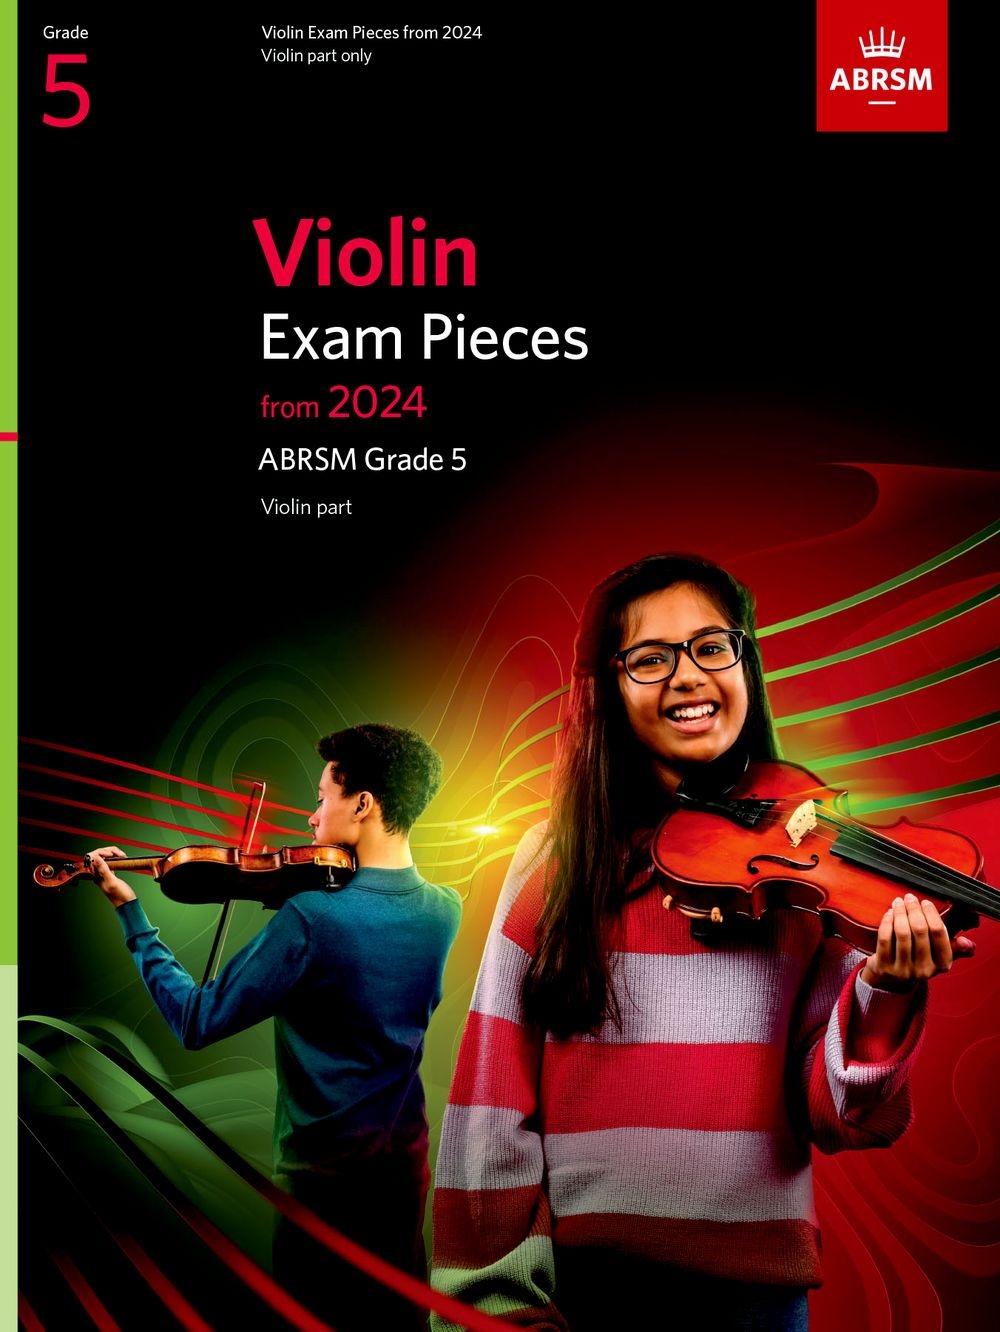 Violin Exam Pieces from 2024, ABRSM Grade 5